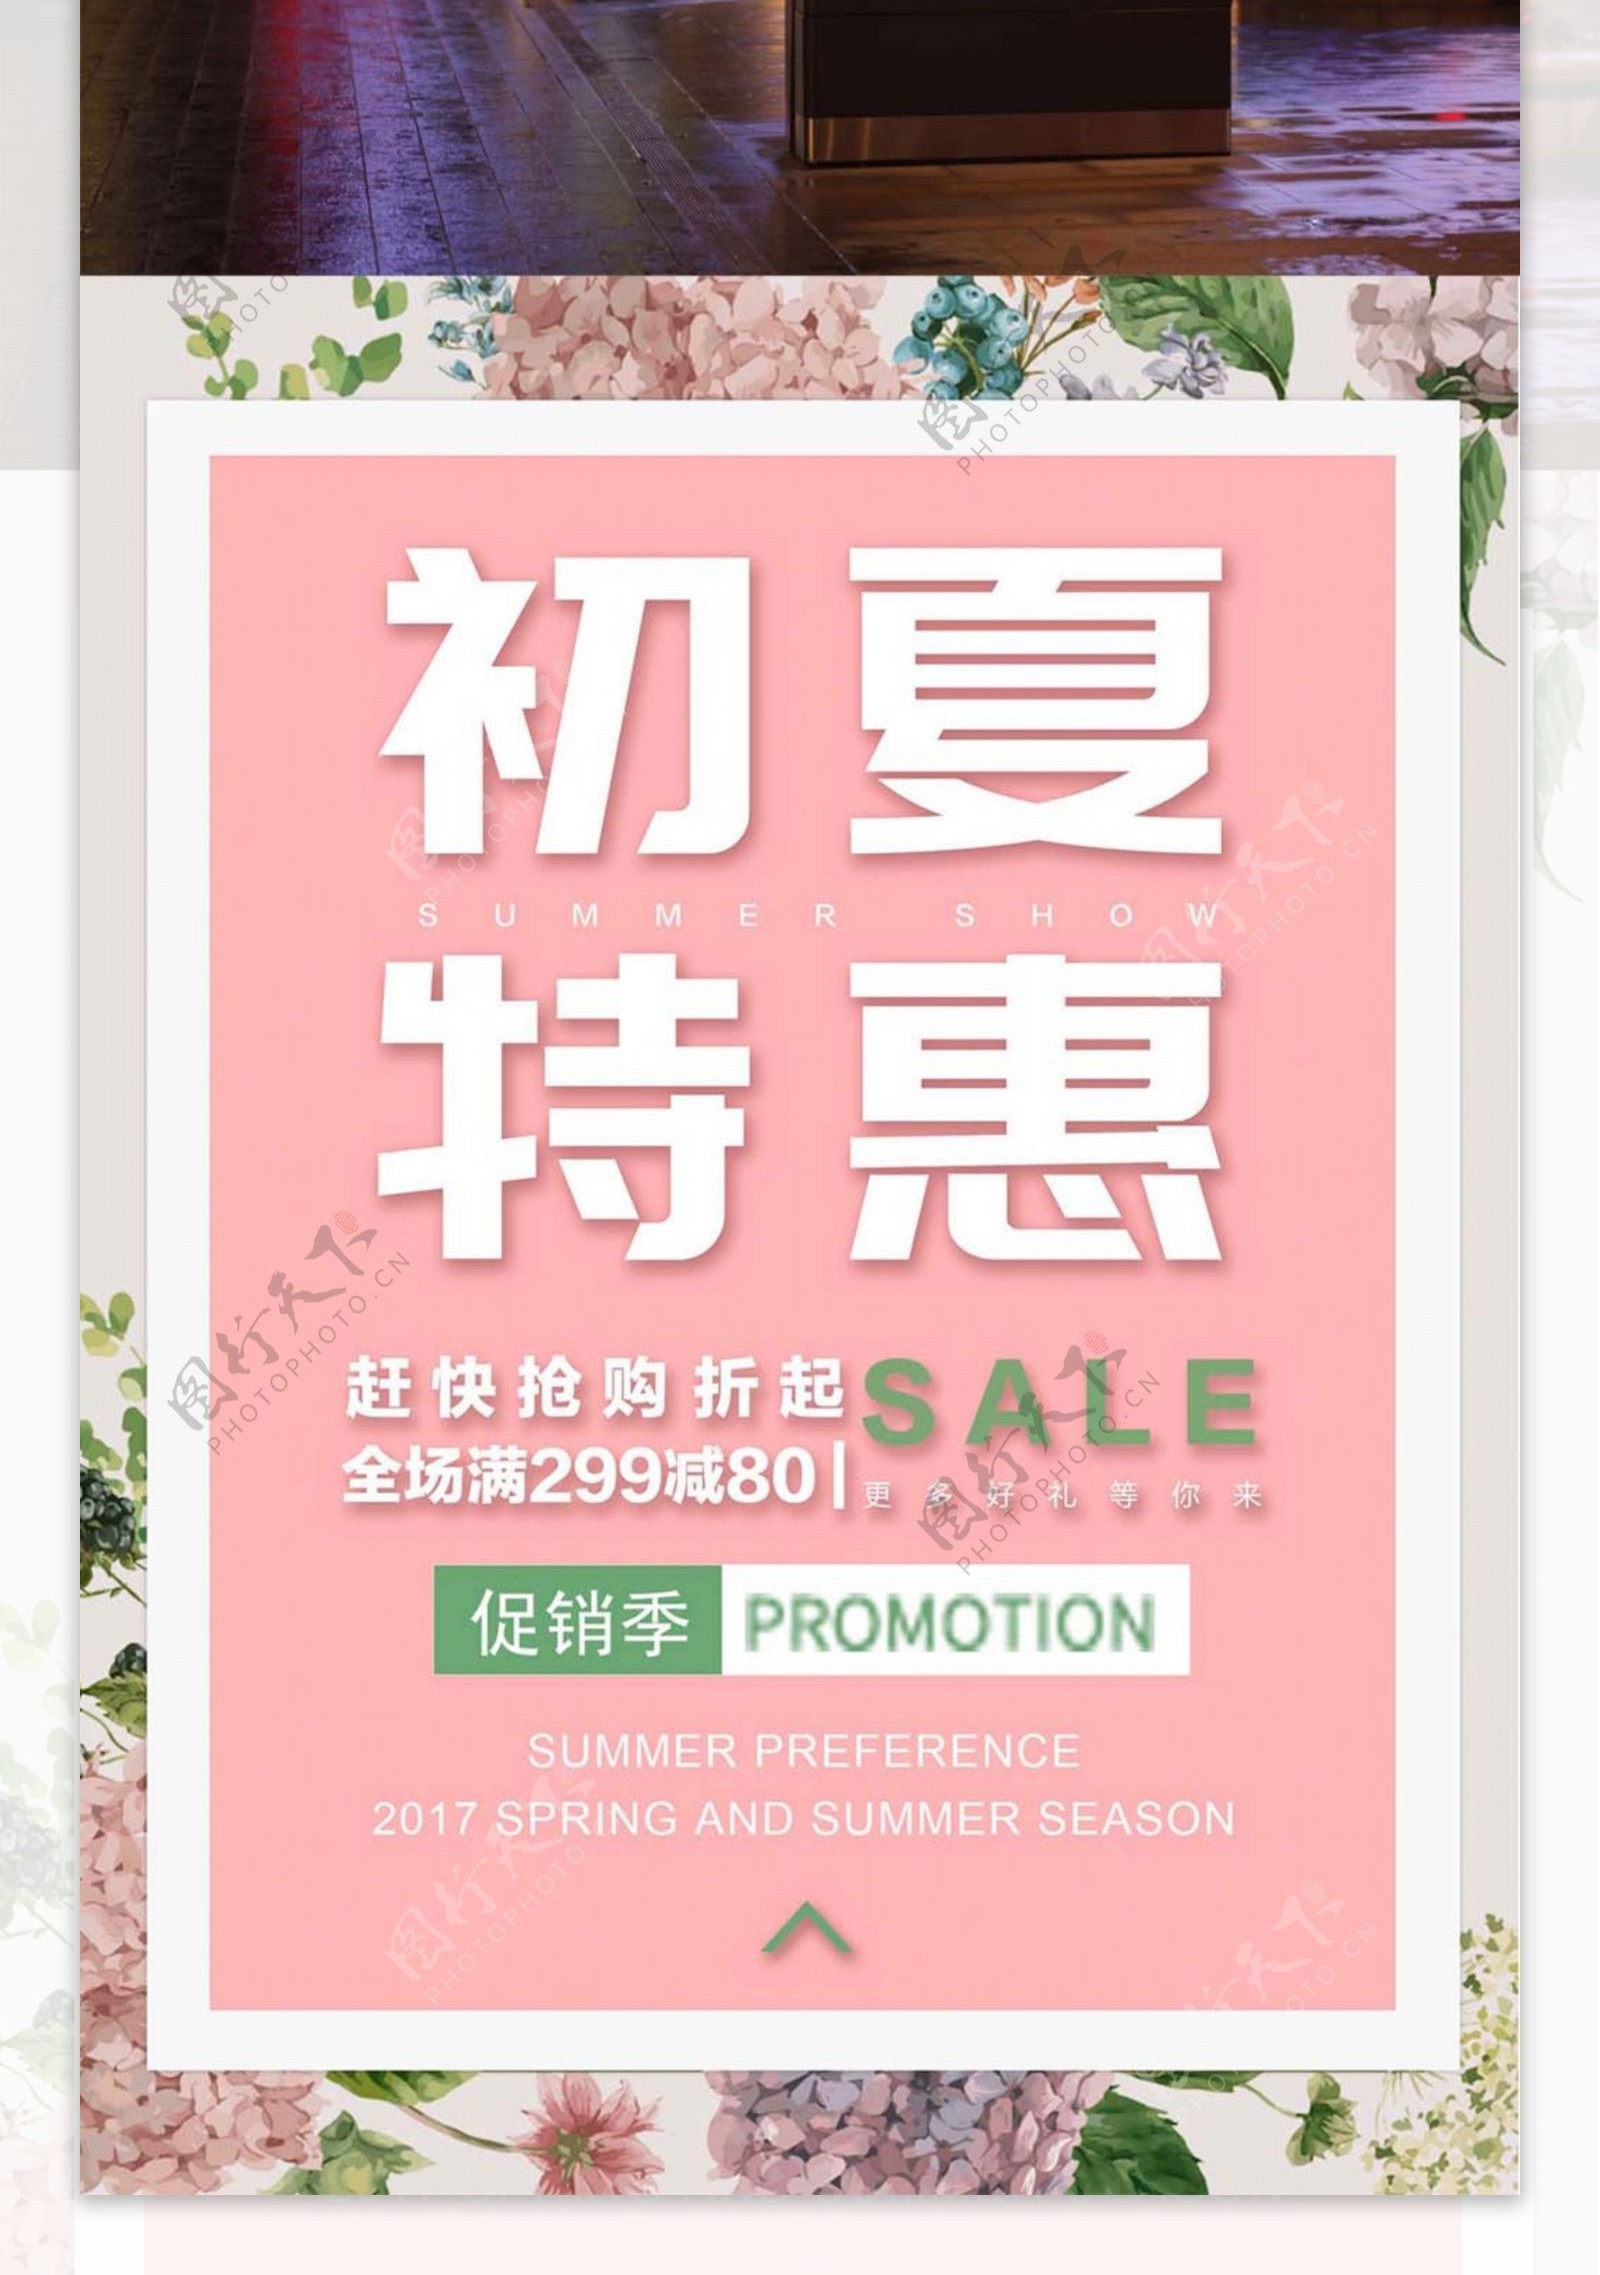 初夏特惠促销粉红简约商业设计海报模板